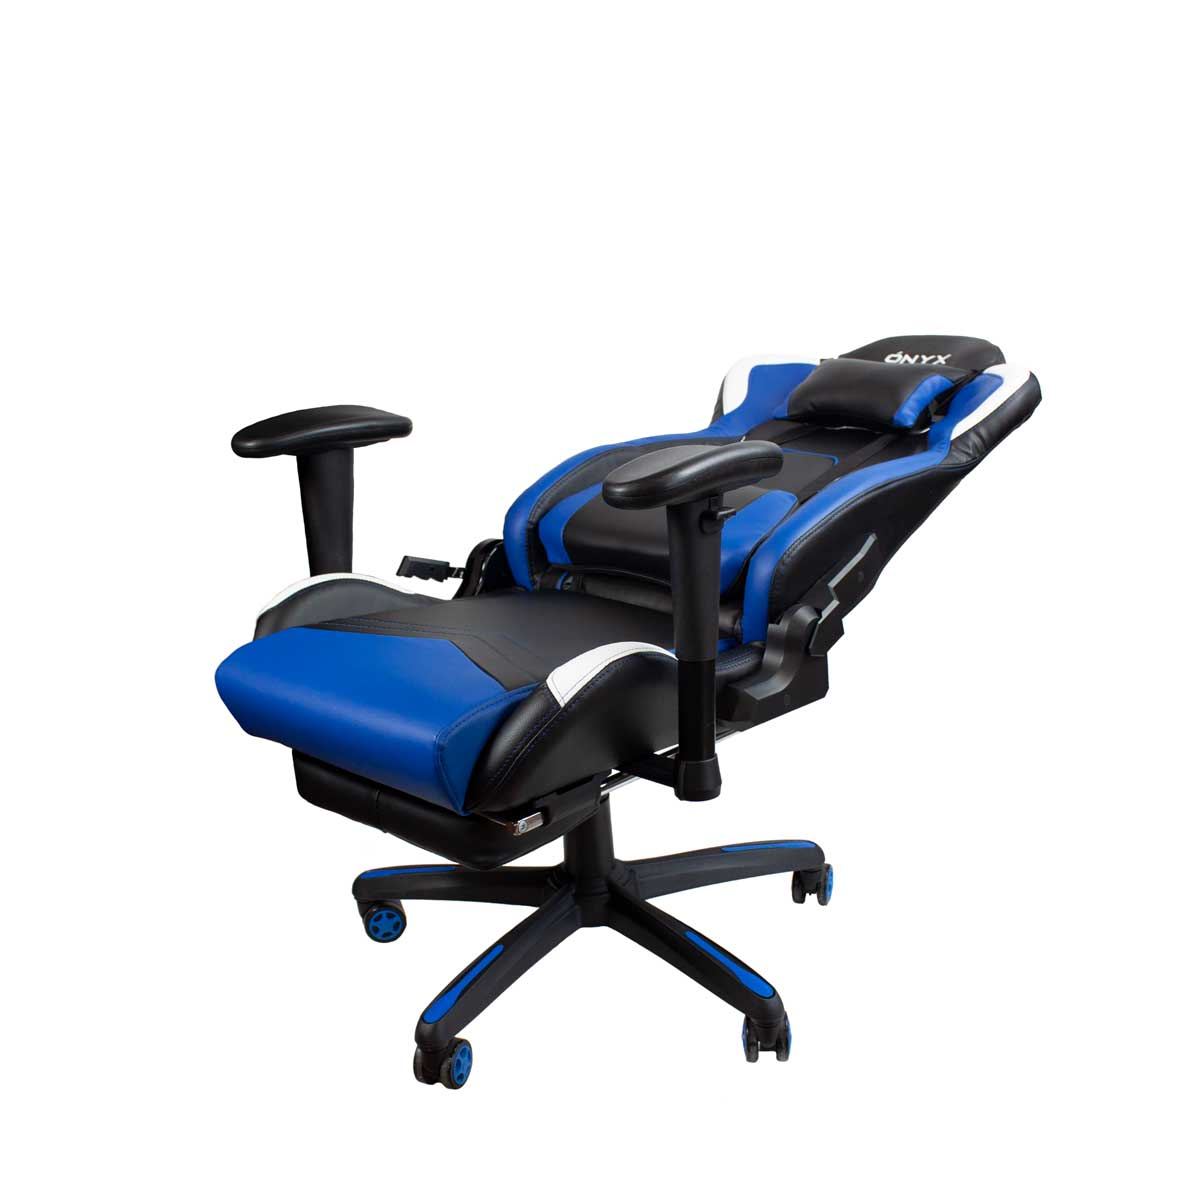 Blau Onyx PRIXTON Chair, Gaming